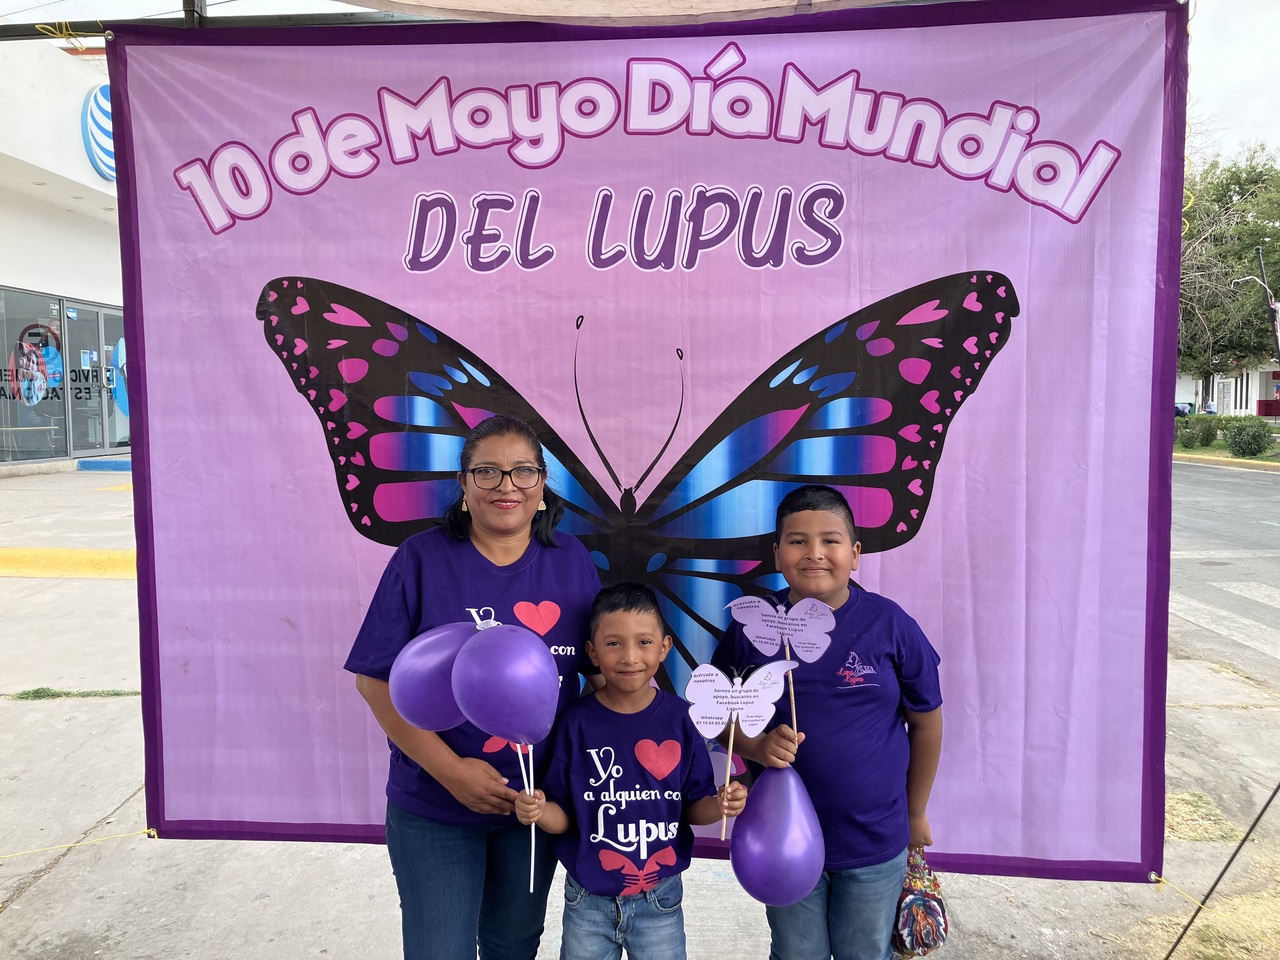 A sus nueve años de edad, Manuelito está luchando contra el lupus, una enfermedad autoinmune.